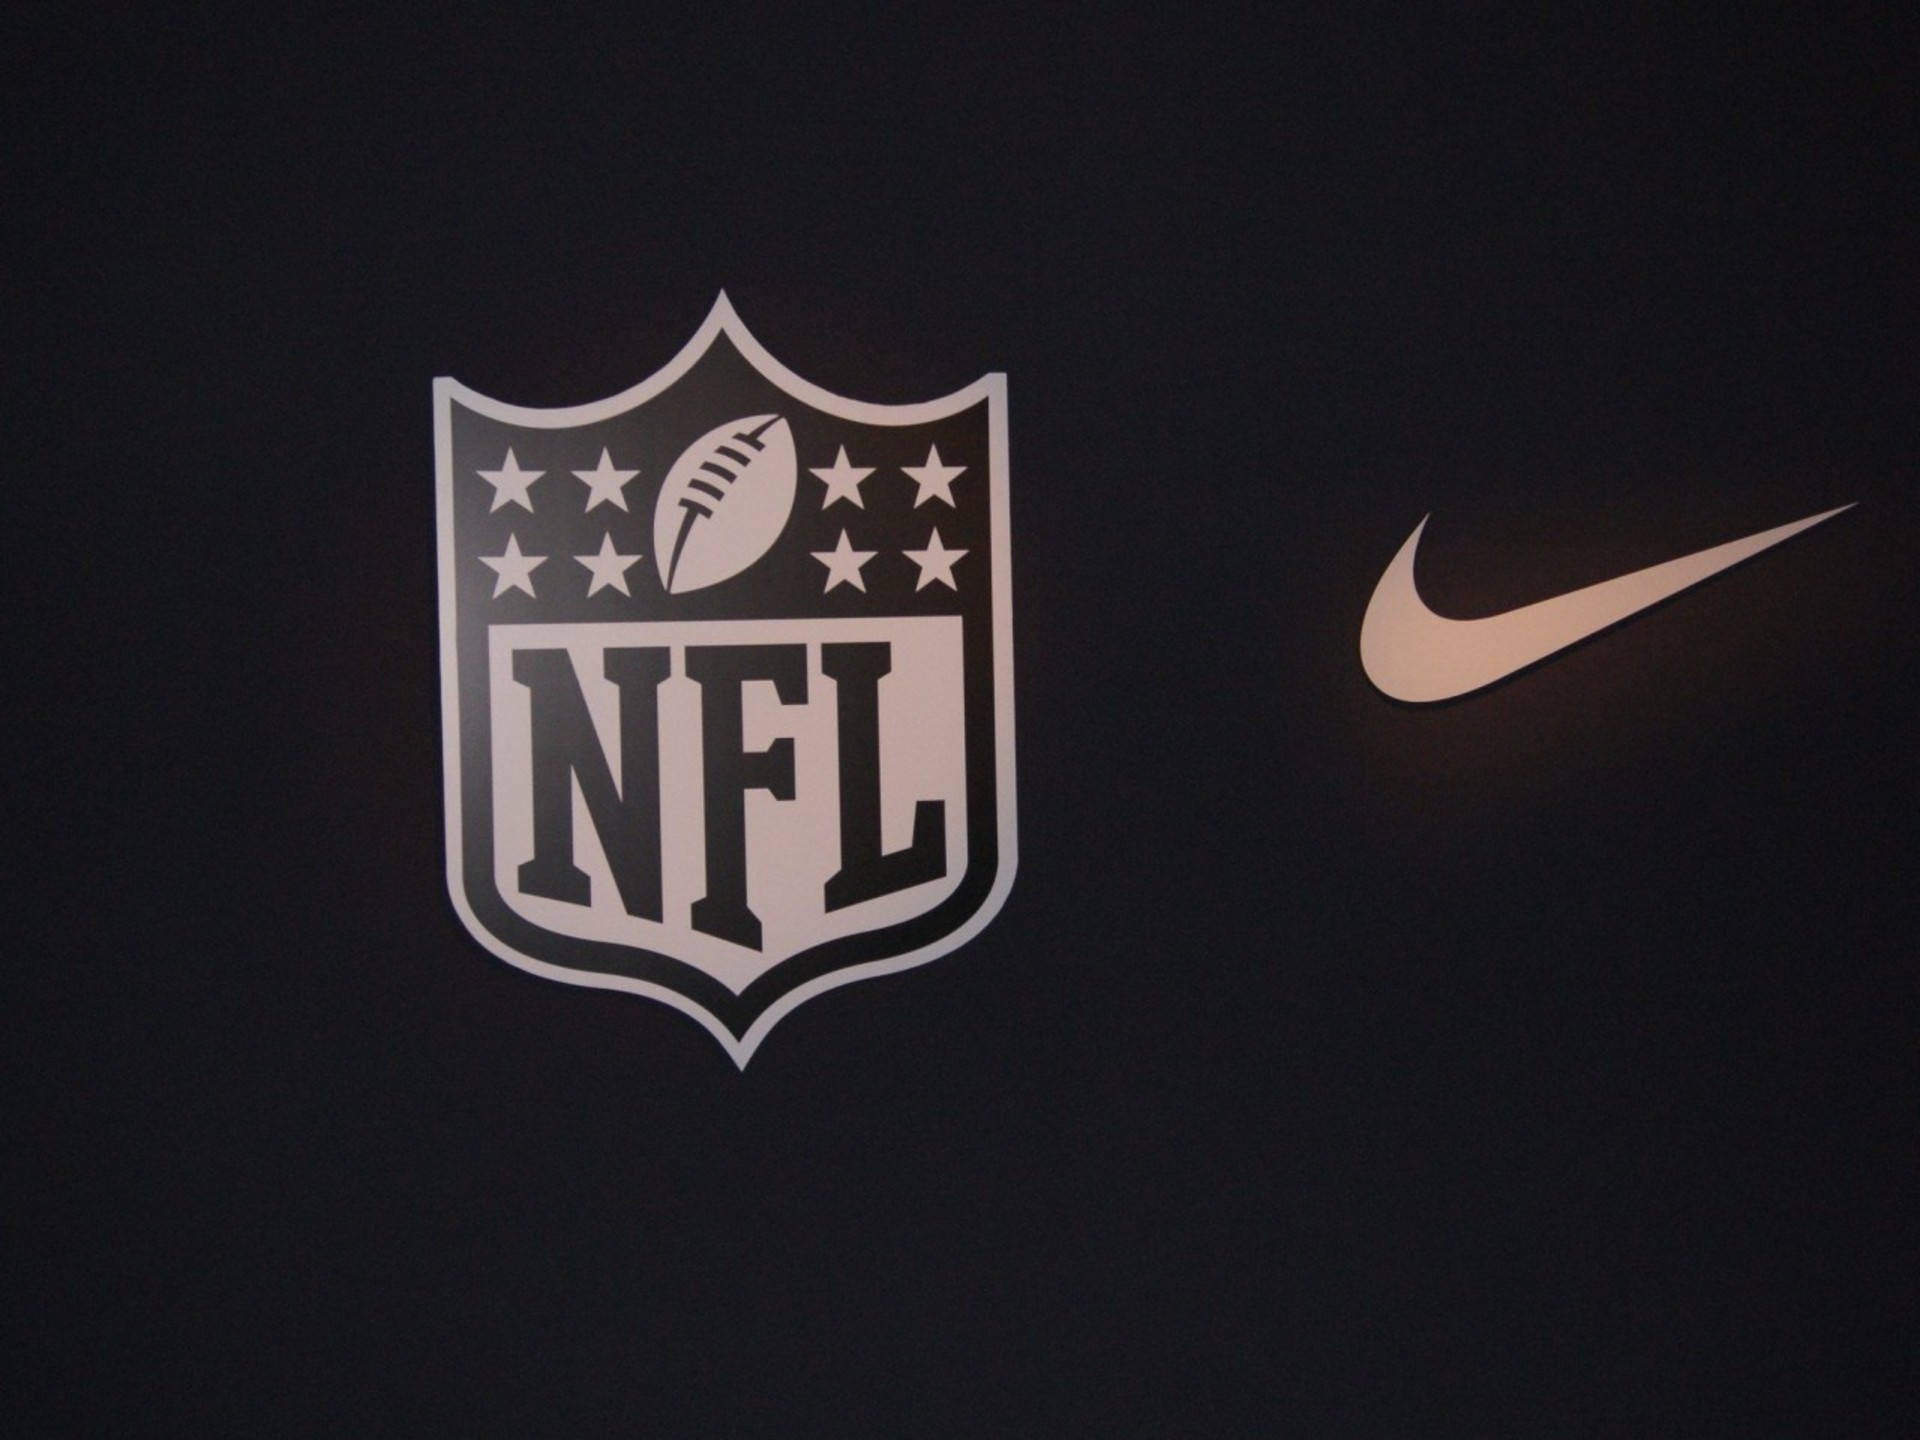 Logosde La Nfl De Fútbol Americano Y Nike. Fondo de pantalla